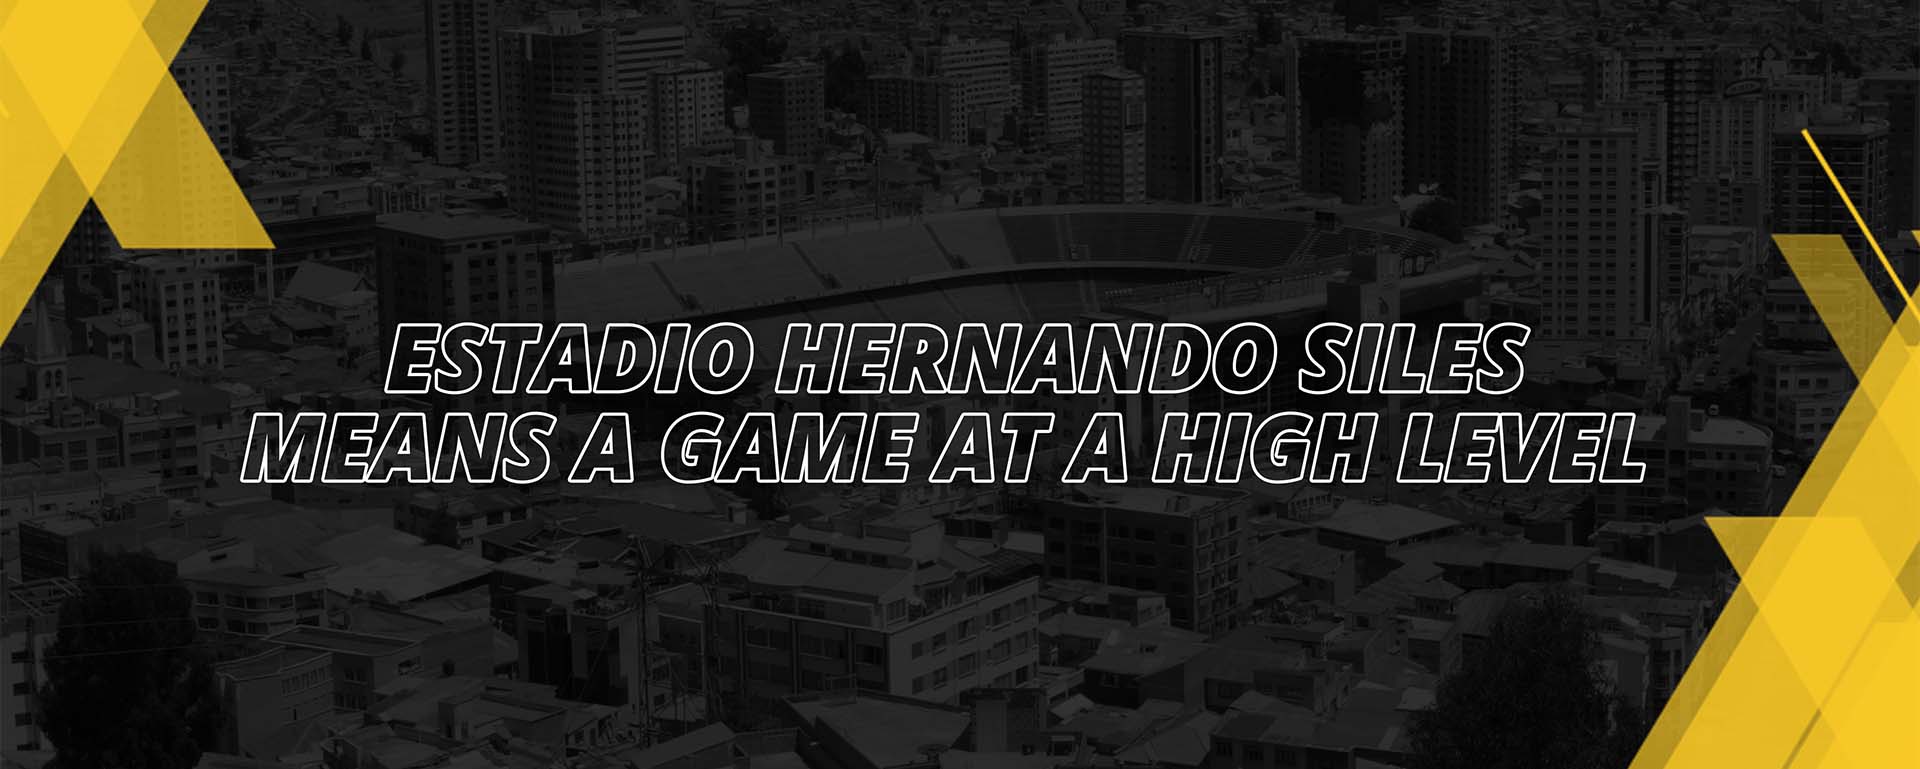 ESTADIO HERNANDO SILES MEANS A GAME AT A HIGH LEVEL